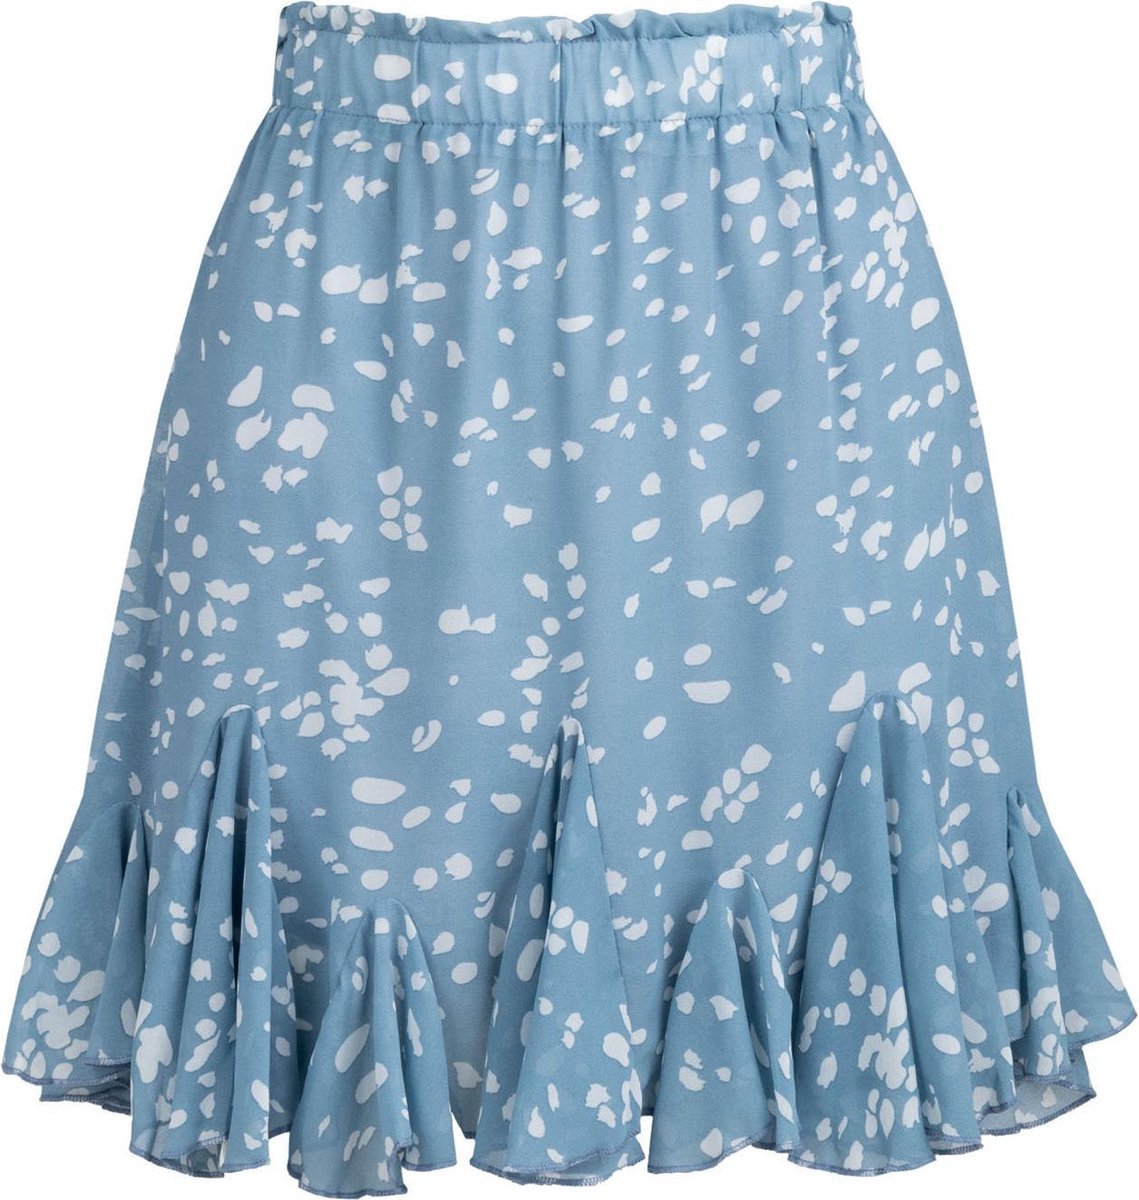 Dots mini skirt light blue